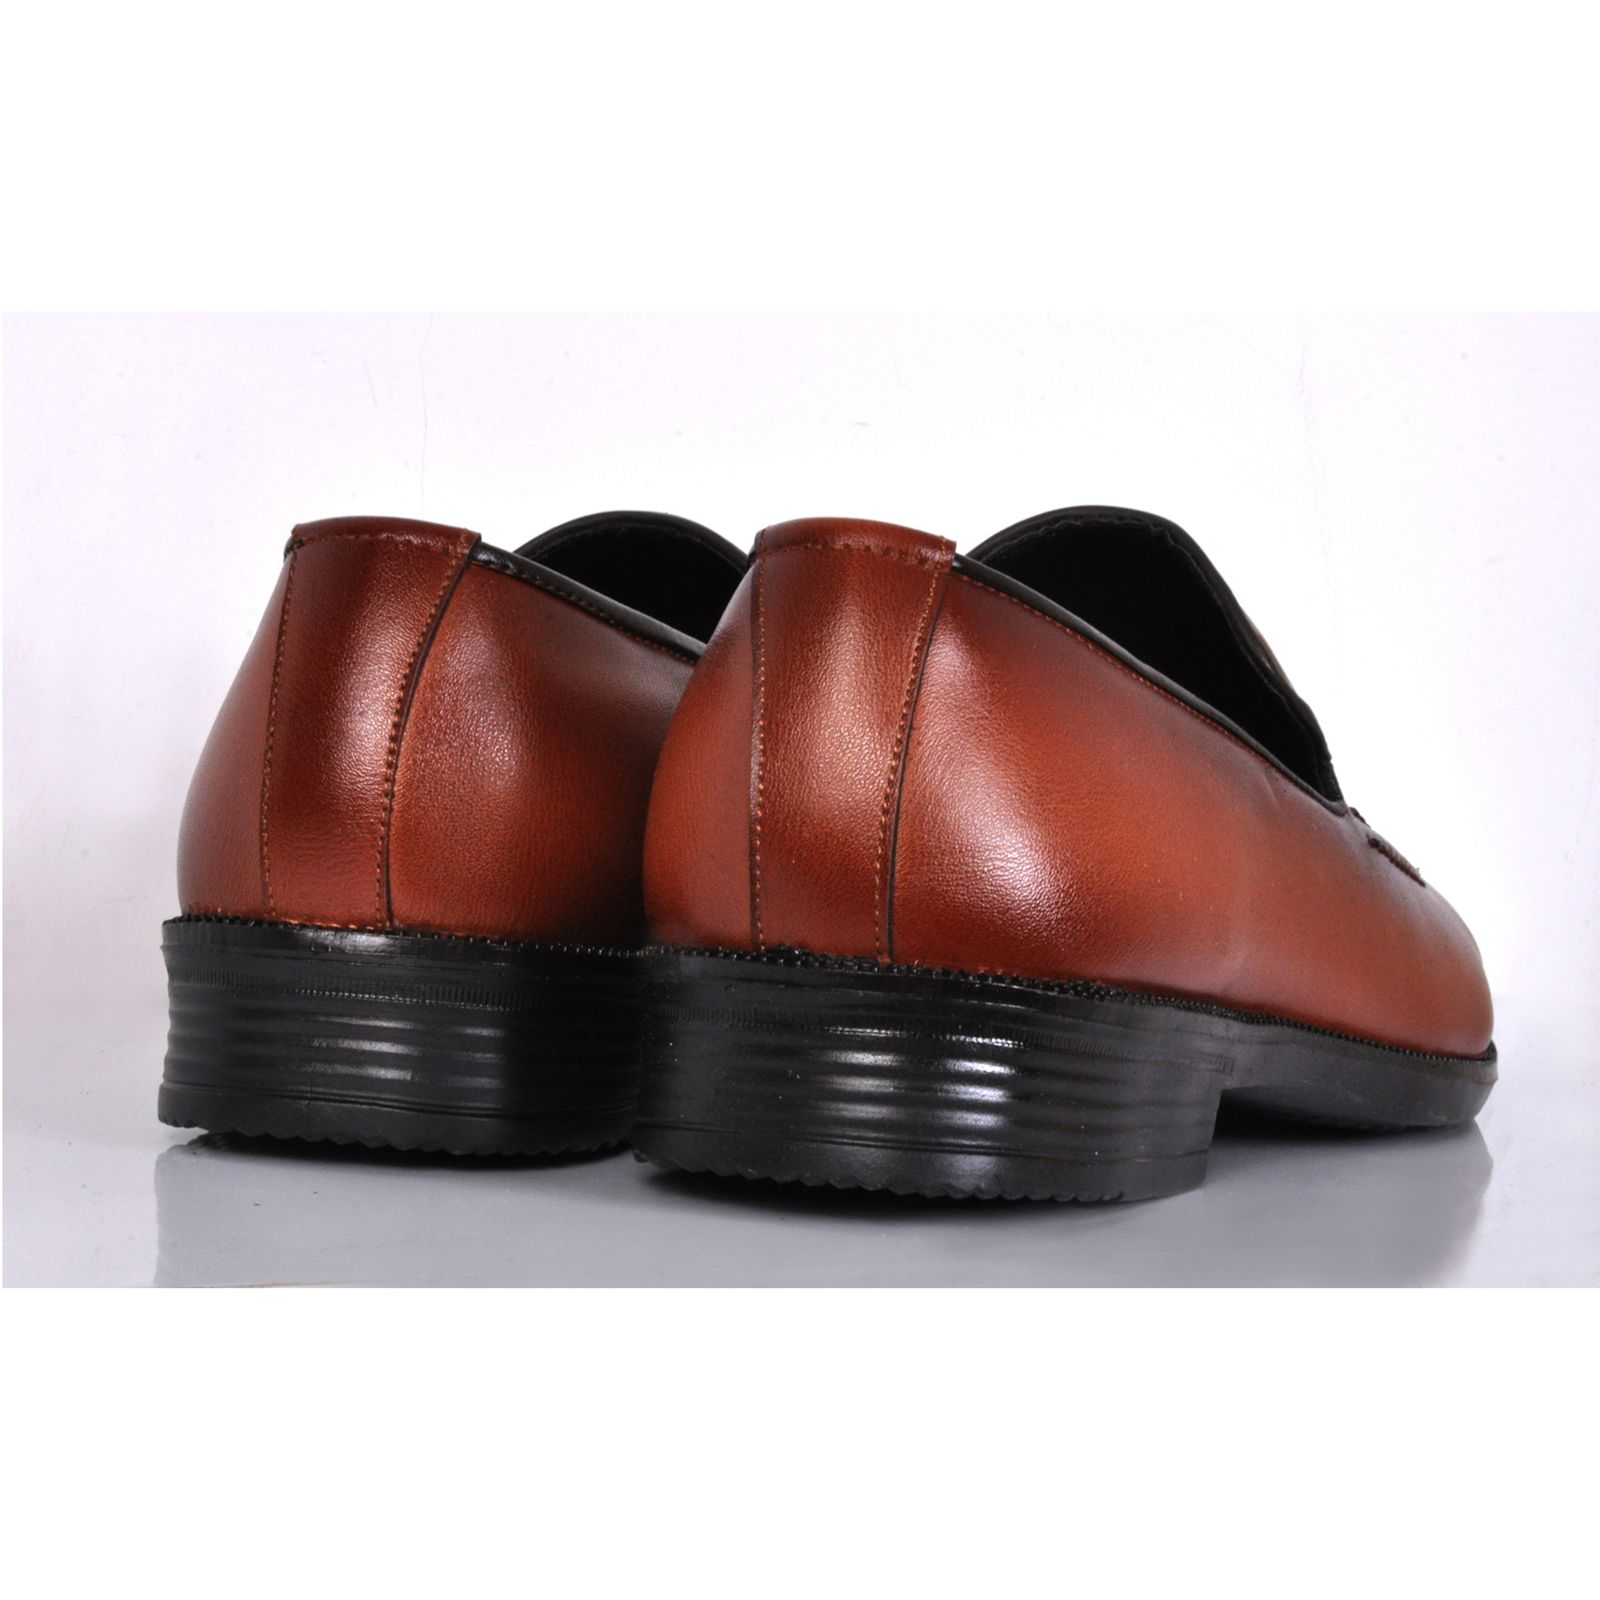 کفش مردانه کروماکی مدل kms901 -  - 3